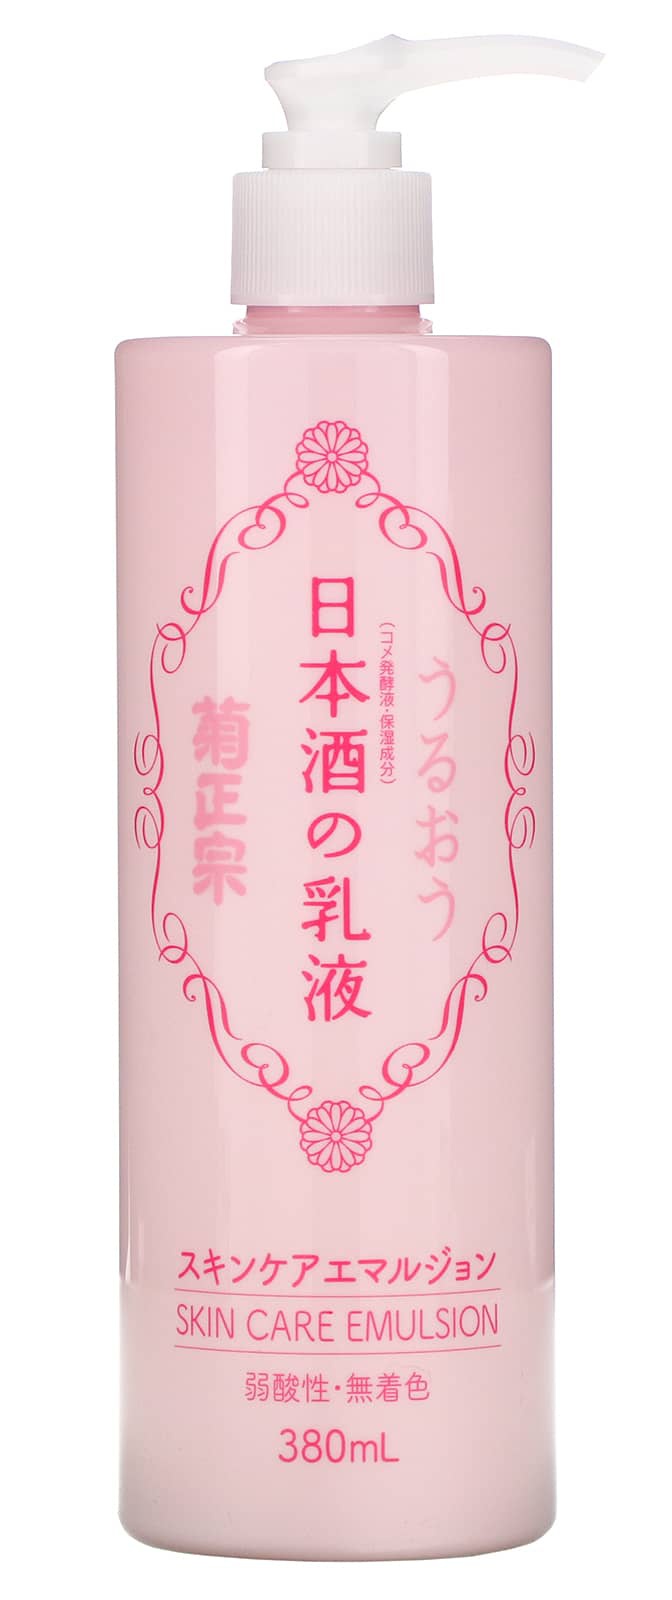 Kikumasamune Japanese Sake Skin Care Emulsion